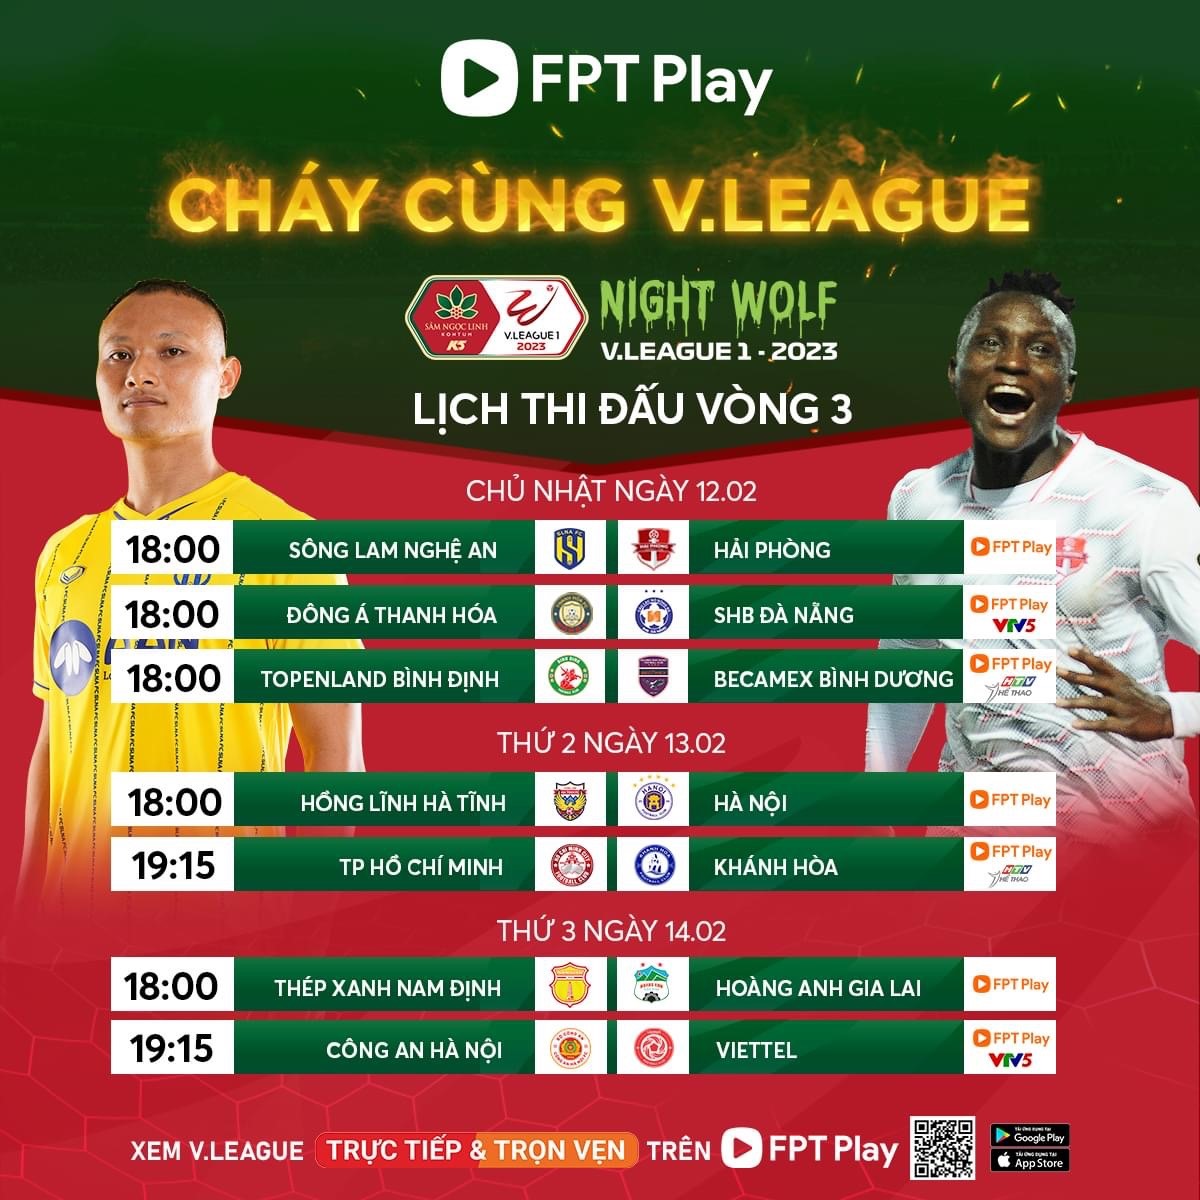 Lịch thi đấu vòng 3 V.League 2023 Nam Định vs Hoàng Anh Gia Lai